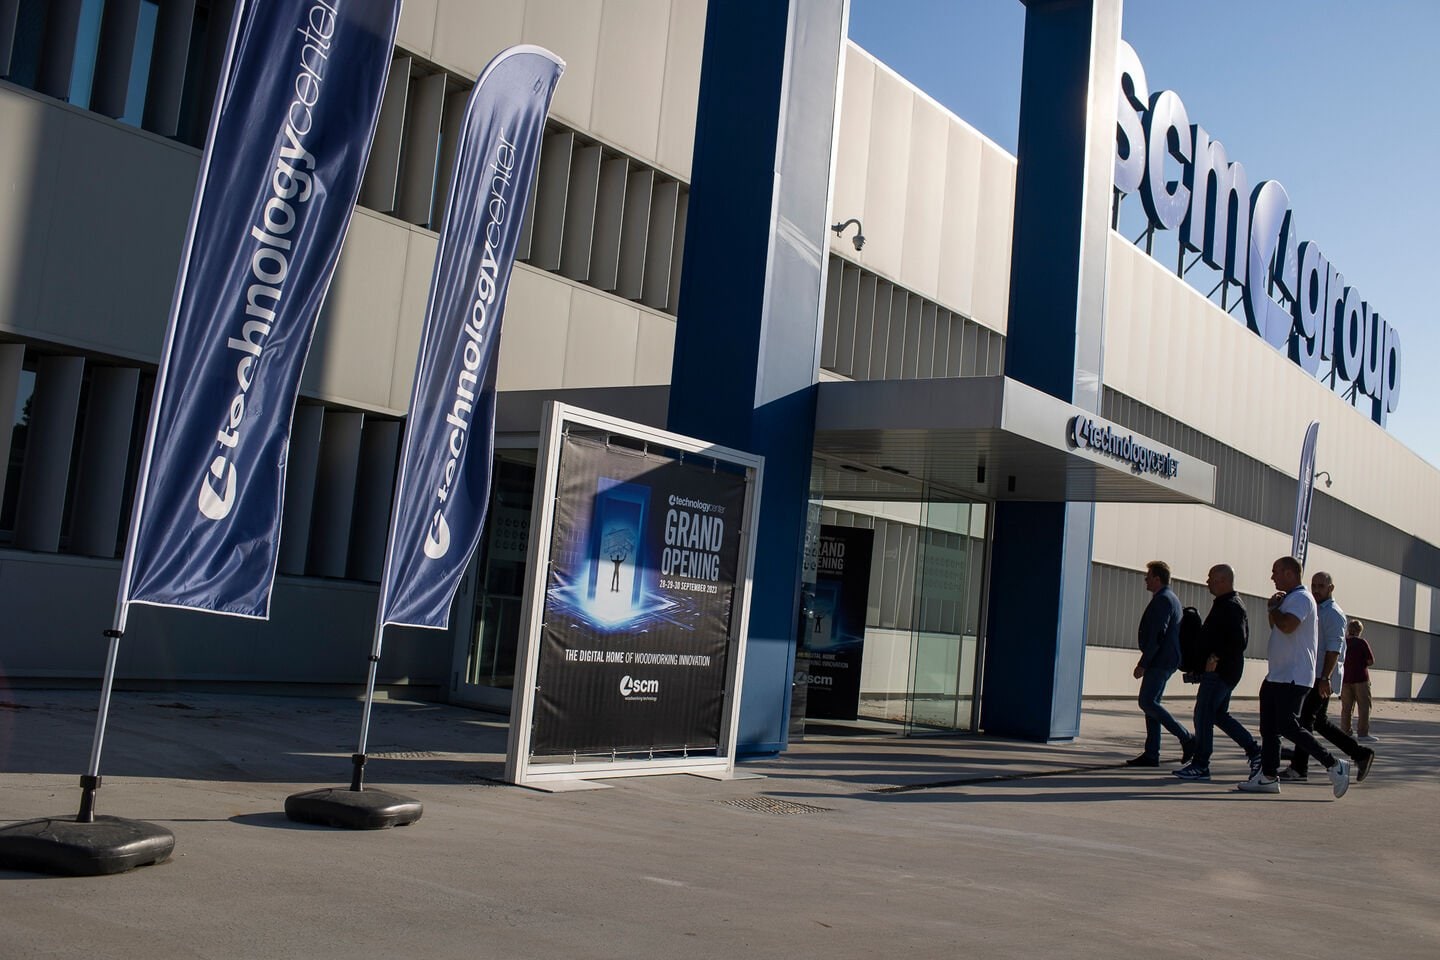 Scm inaugura el Technology Center más avanzado del mundo